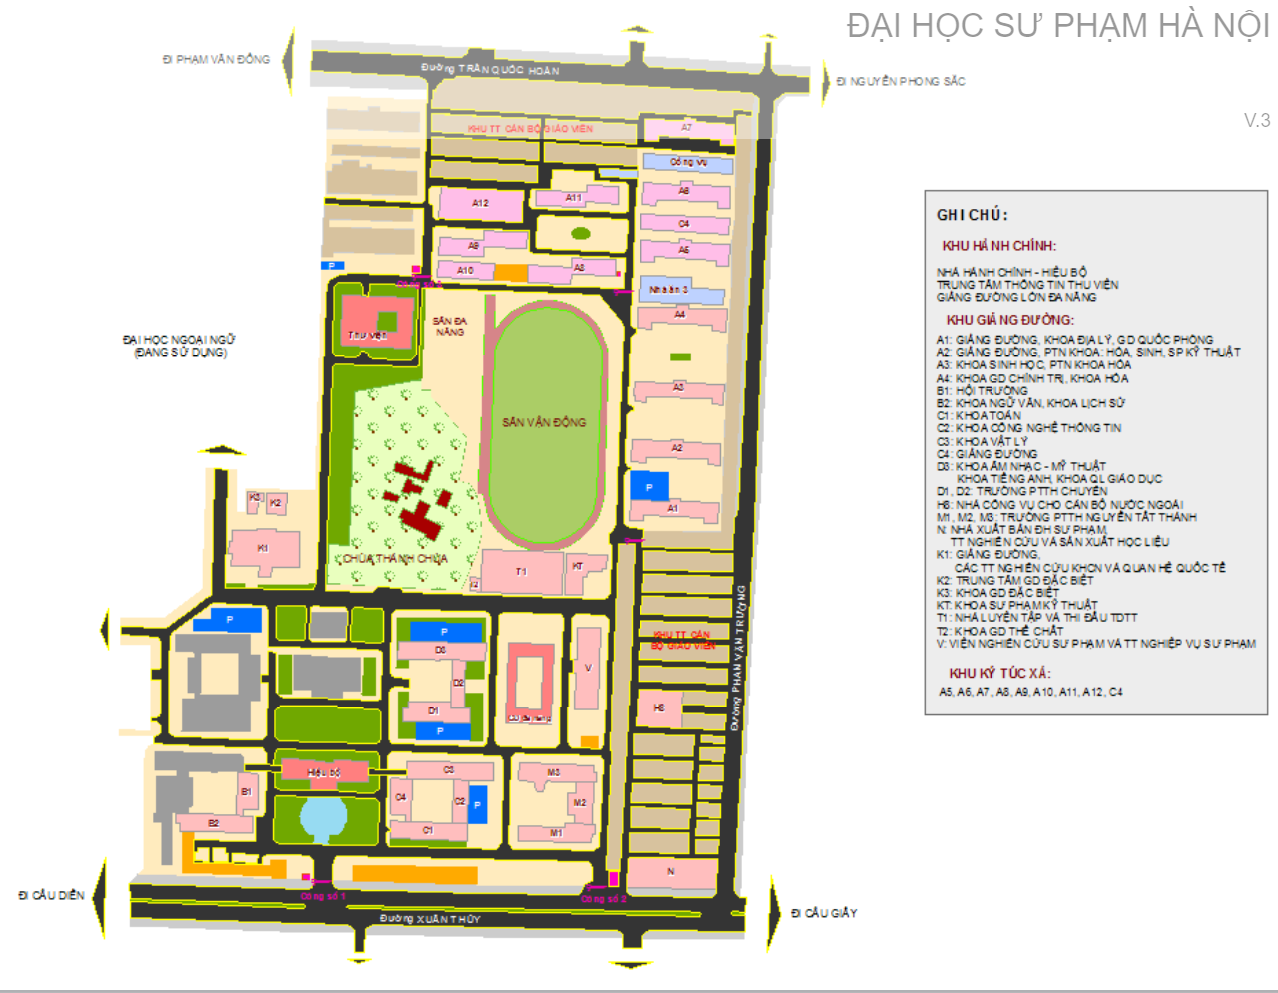 Bản đồ trường Đại học Sư Phạm Đà Nẵng sẽ giúp bạn dễ dàng tìm thấy địa điểm của trường và cũng giúp cho những sinh viên mới tìm hiểu về trường có một cái nhìn tổng quan về toàn bộ khuôn viên của trường. Hãy xem hình ảnh để khám phá thêm về bản đồ này.